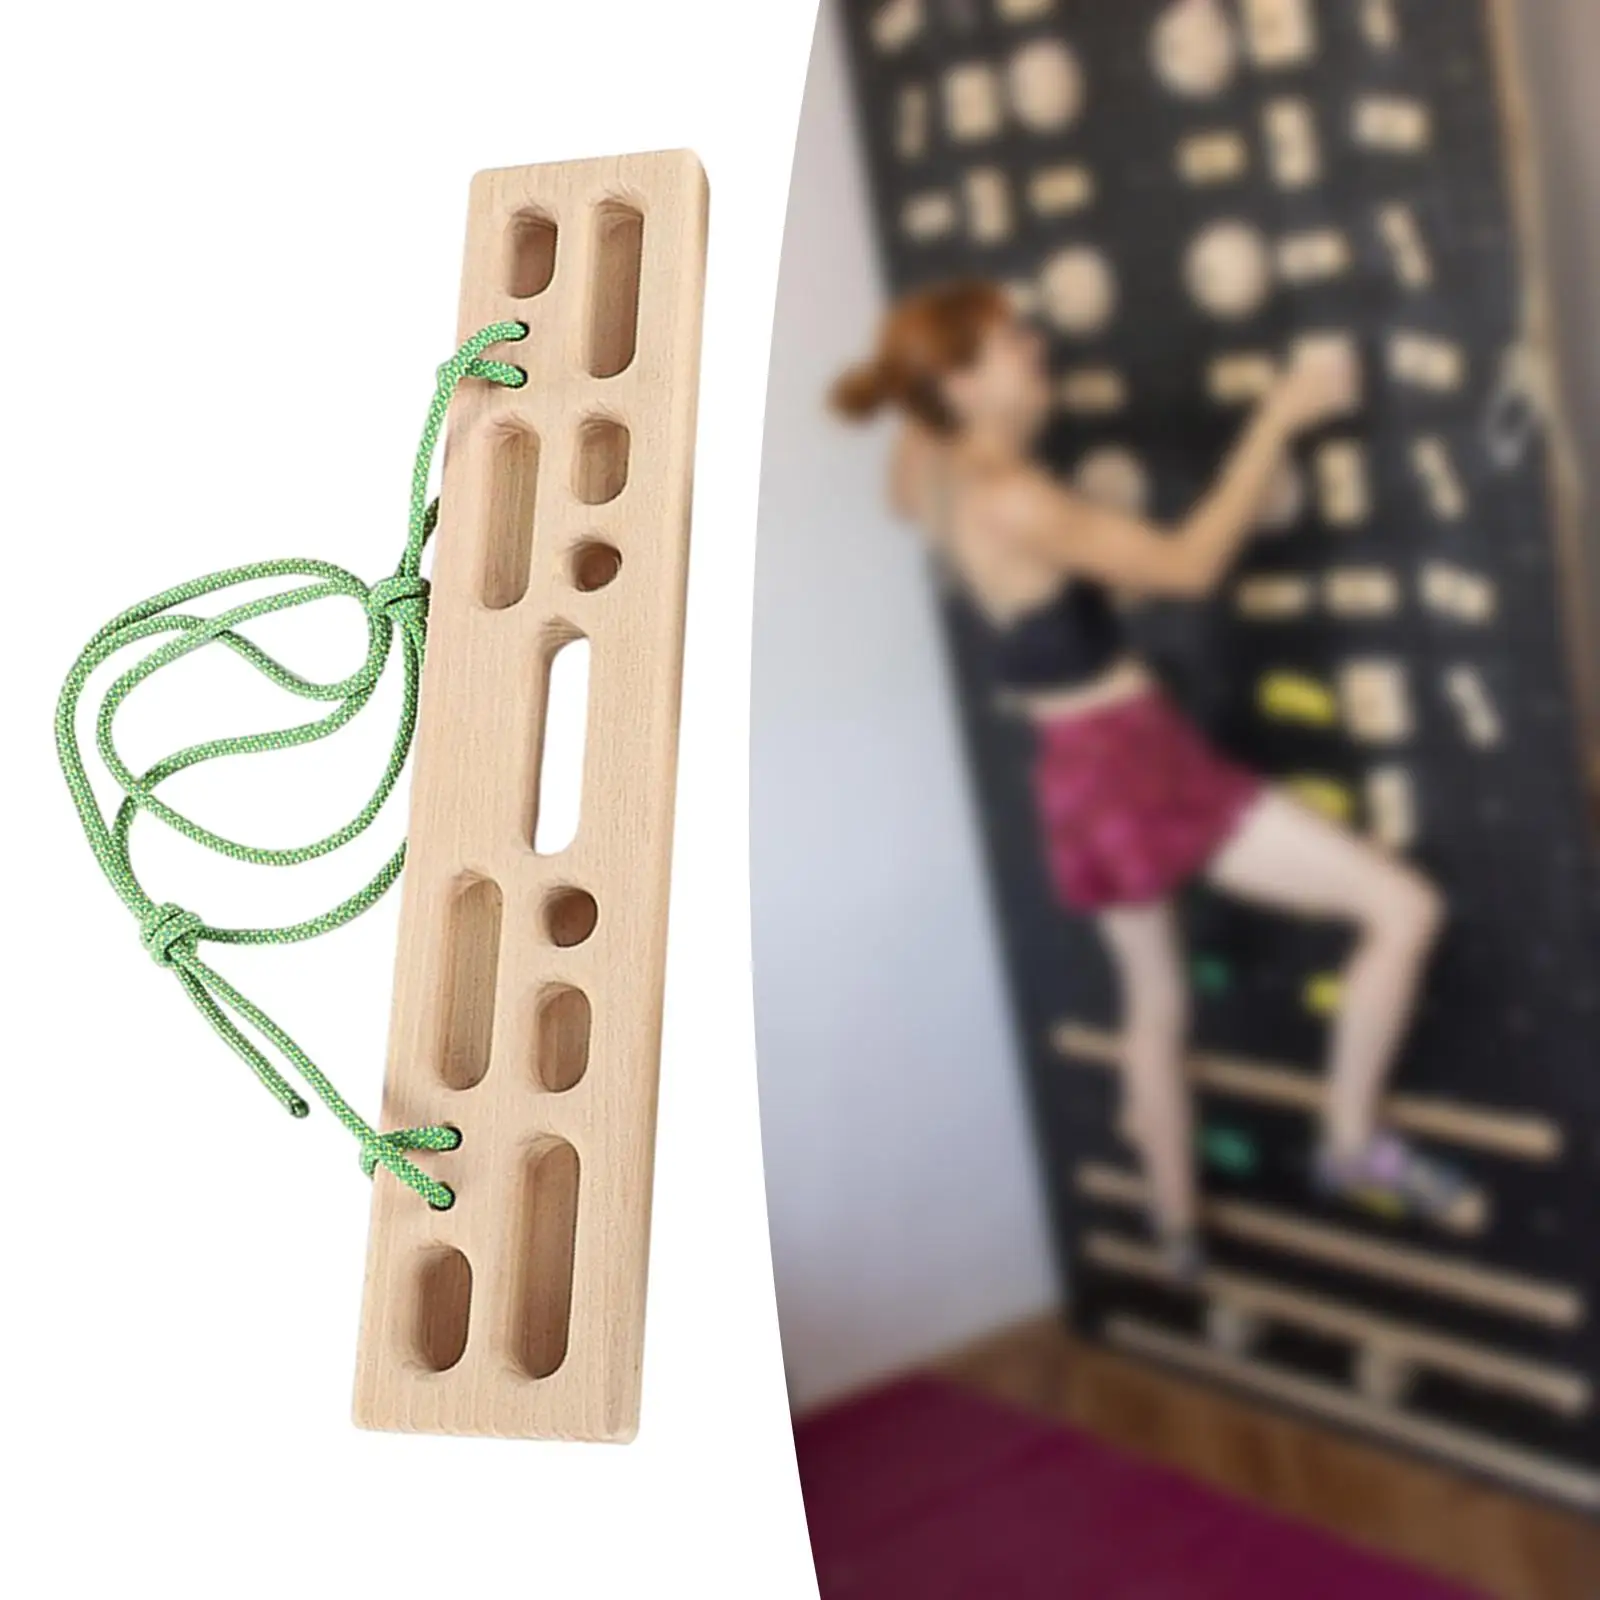 Climbing Hangboard Fingerboard 50cmx10cm for Bouldering Athletes Indoor